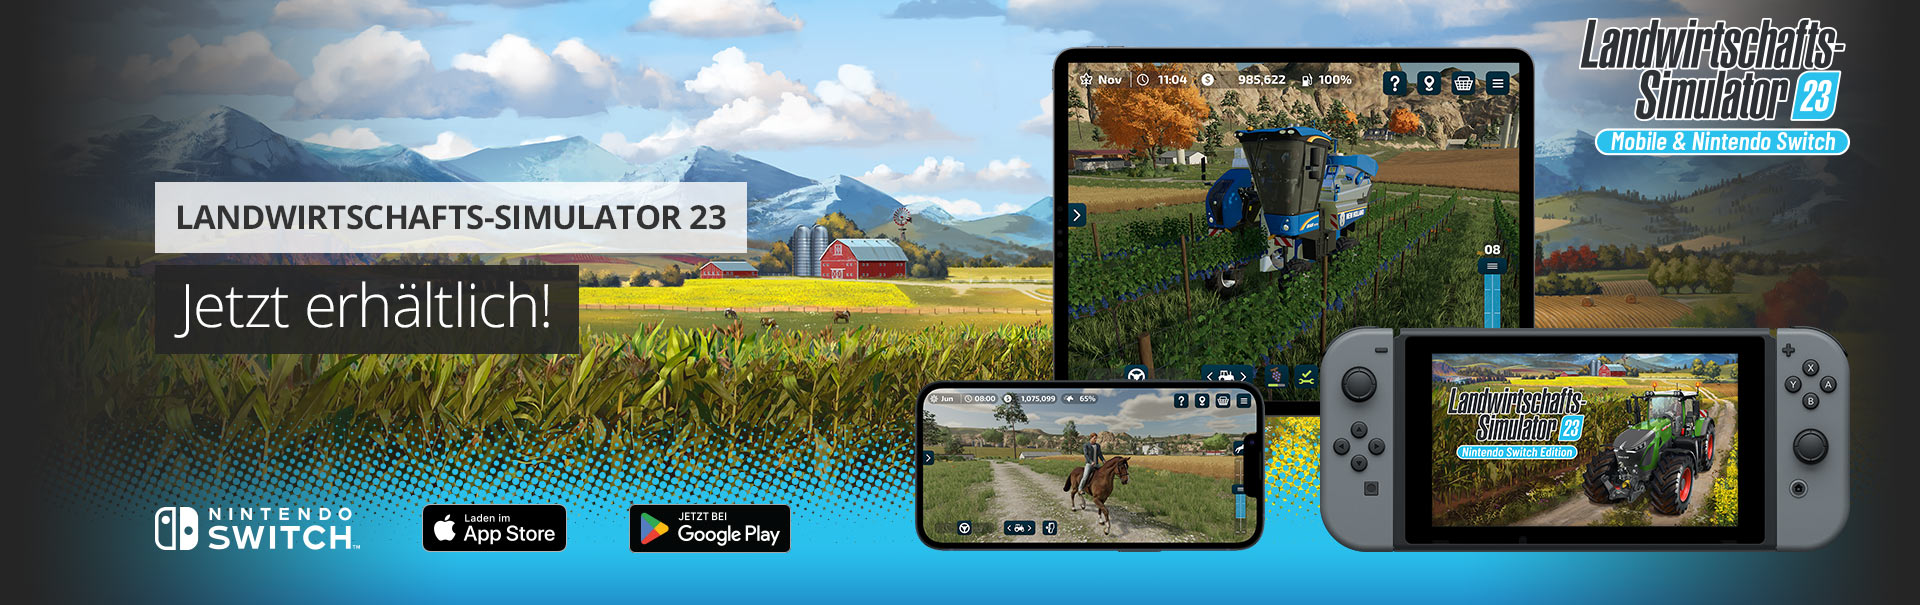 Landwirtschafts-Simulator 23 erhältlich